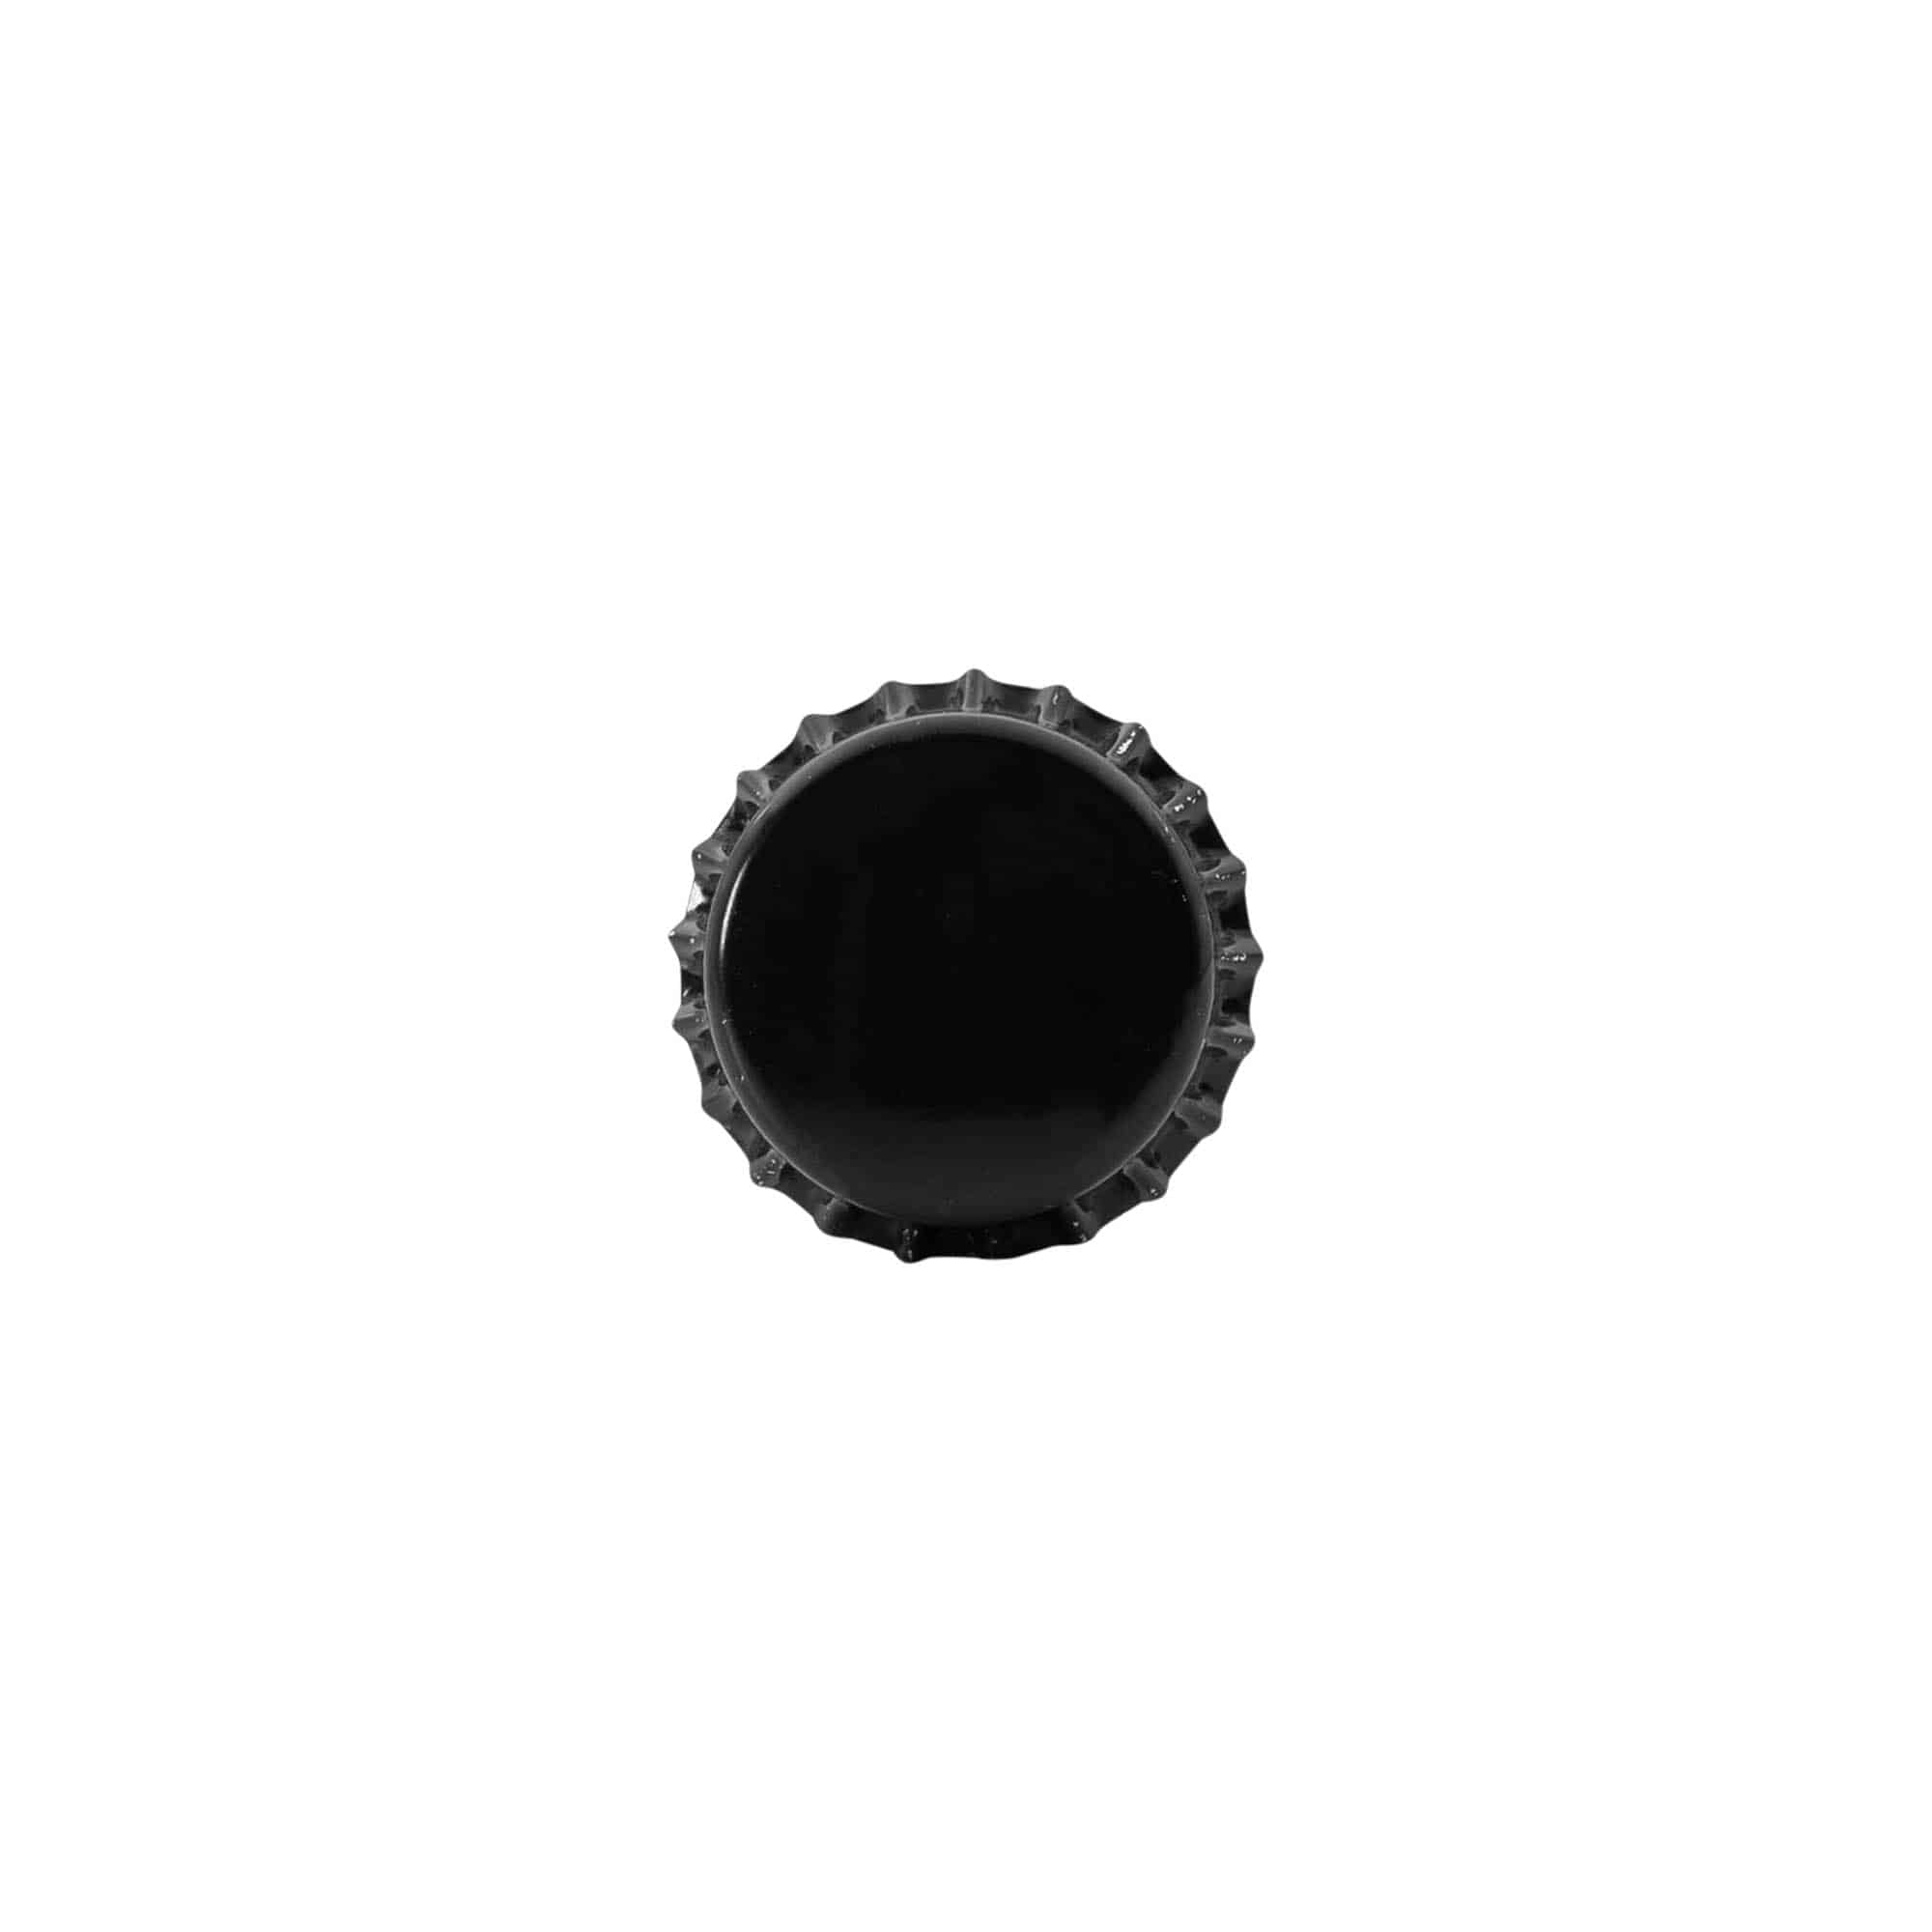 Kapsel 26 mm, metal, kolor czarny